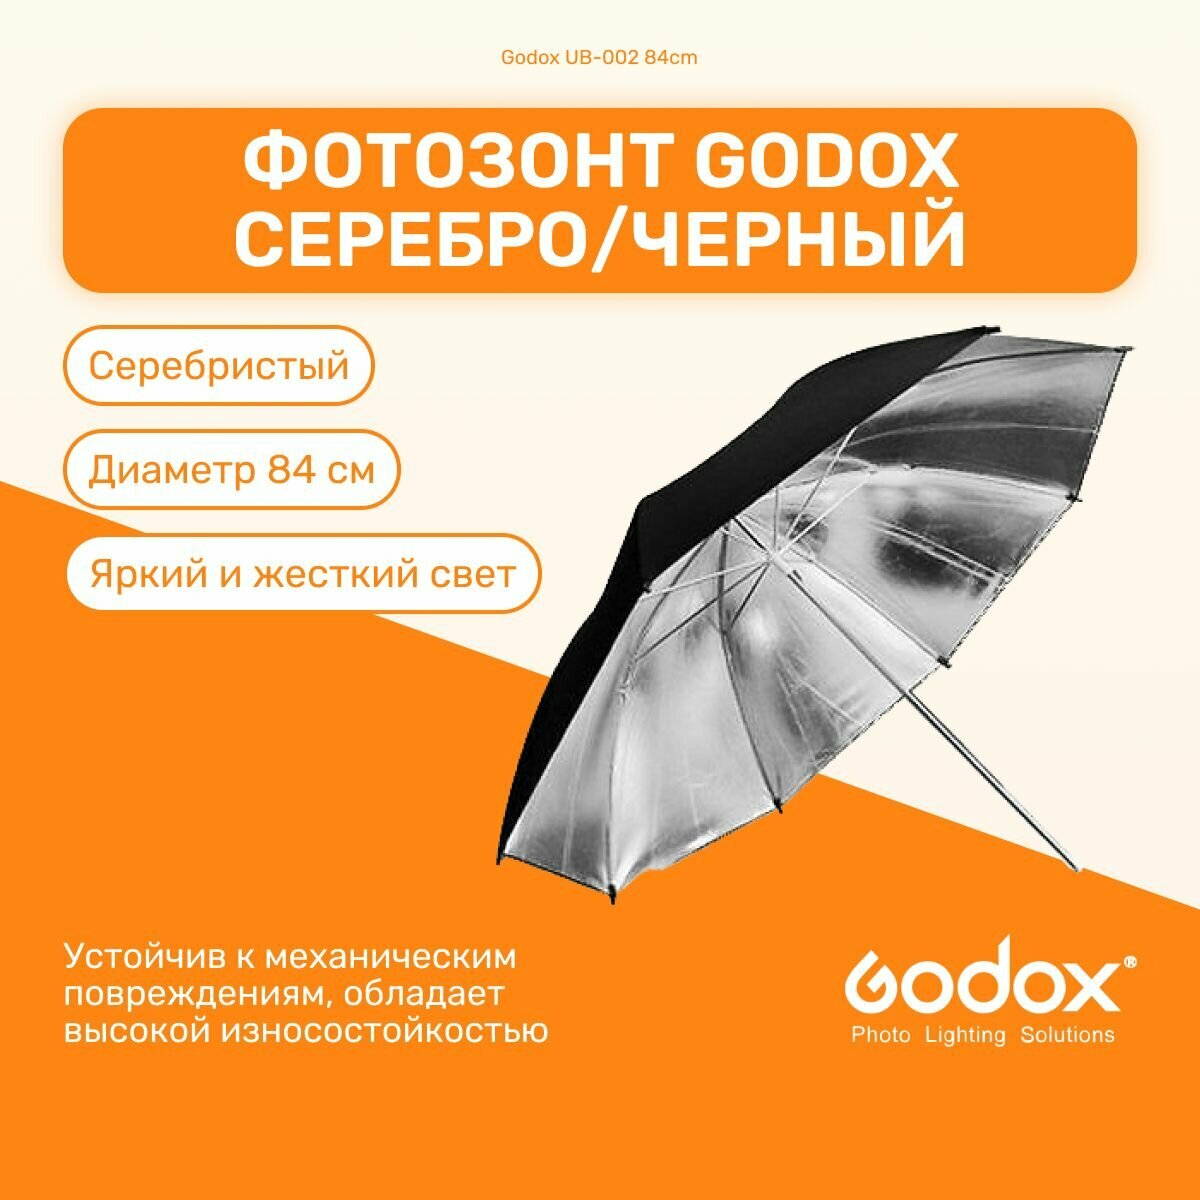 Фотозонт Godox UB-002 84 см серебро/черный, студийный для фото и видео съемок